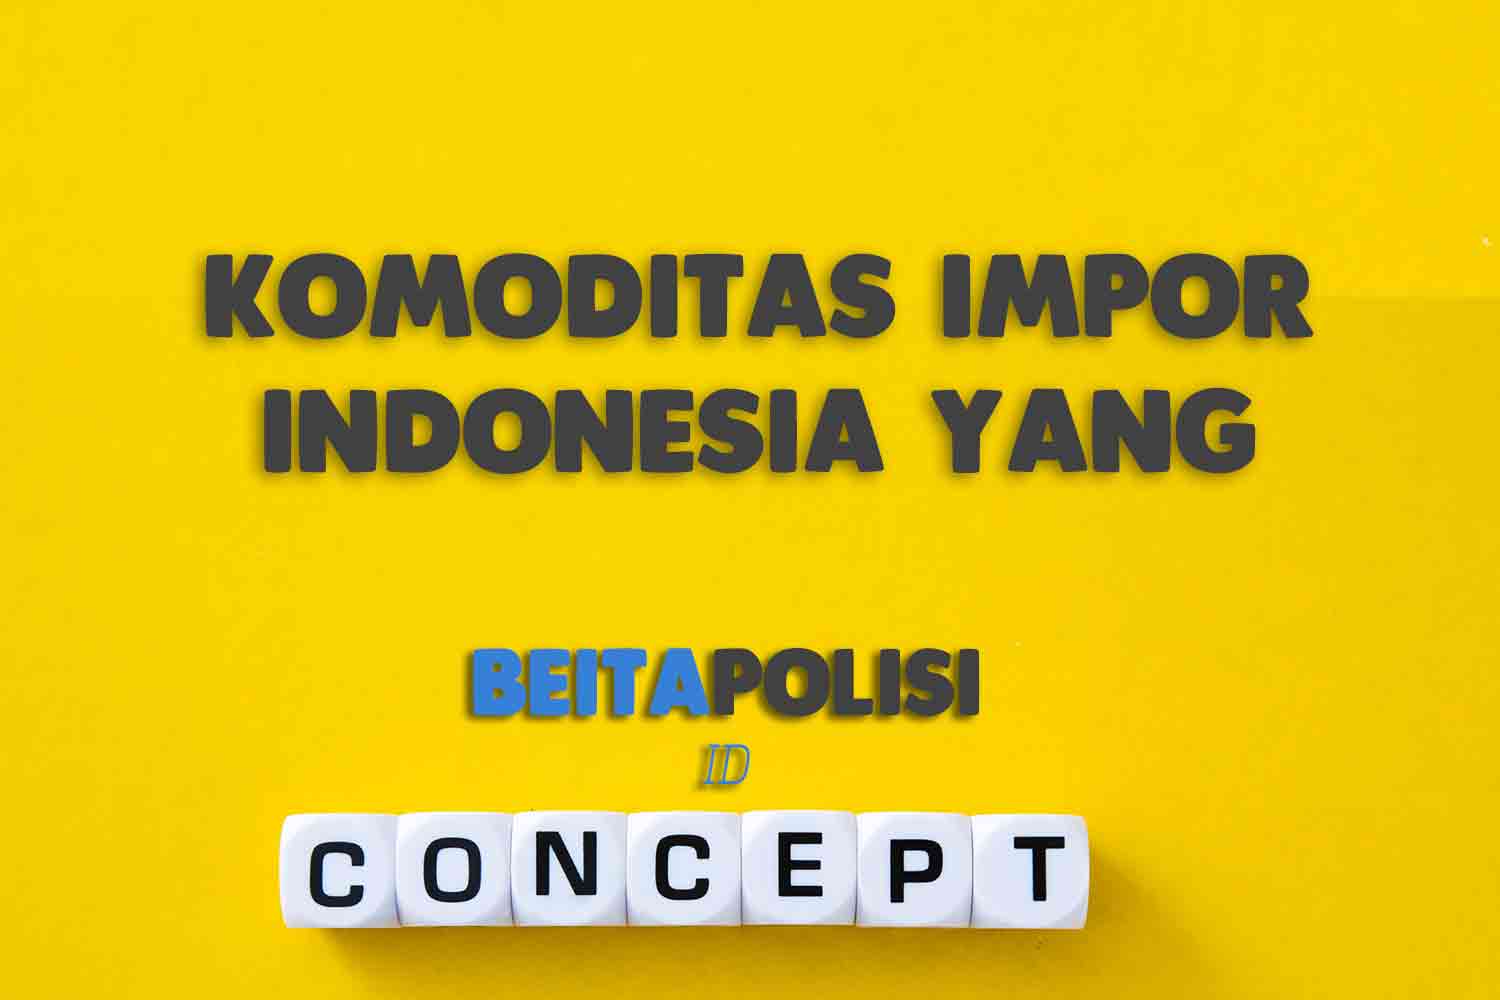 Komoditas Impor Indonesia Yang Merupakan Bahan Baku Penolong Adalah